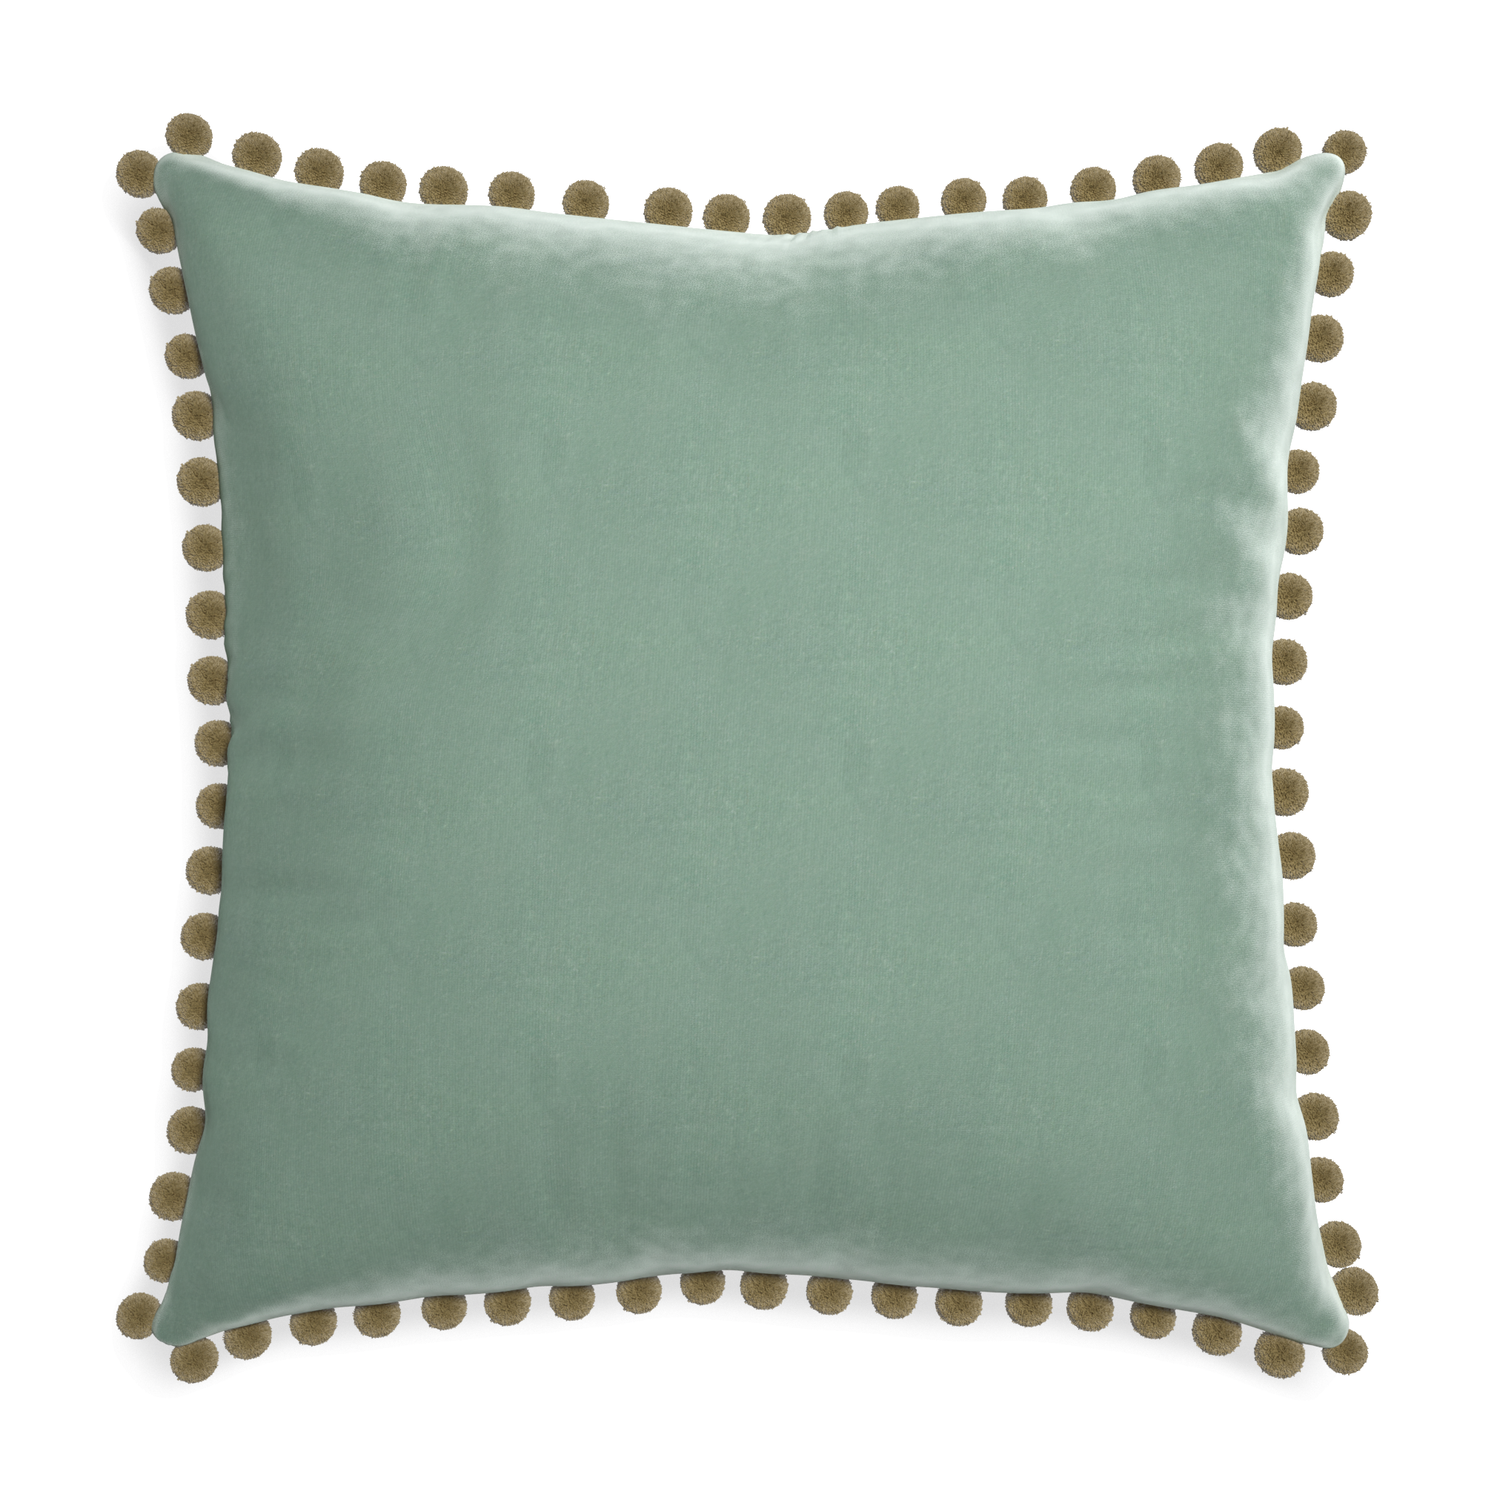 square blue green velvet pillow with olive green pom poms